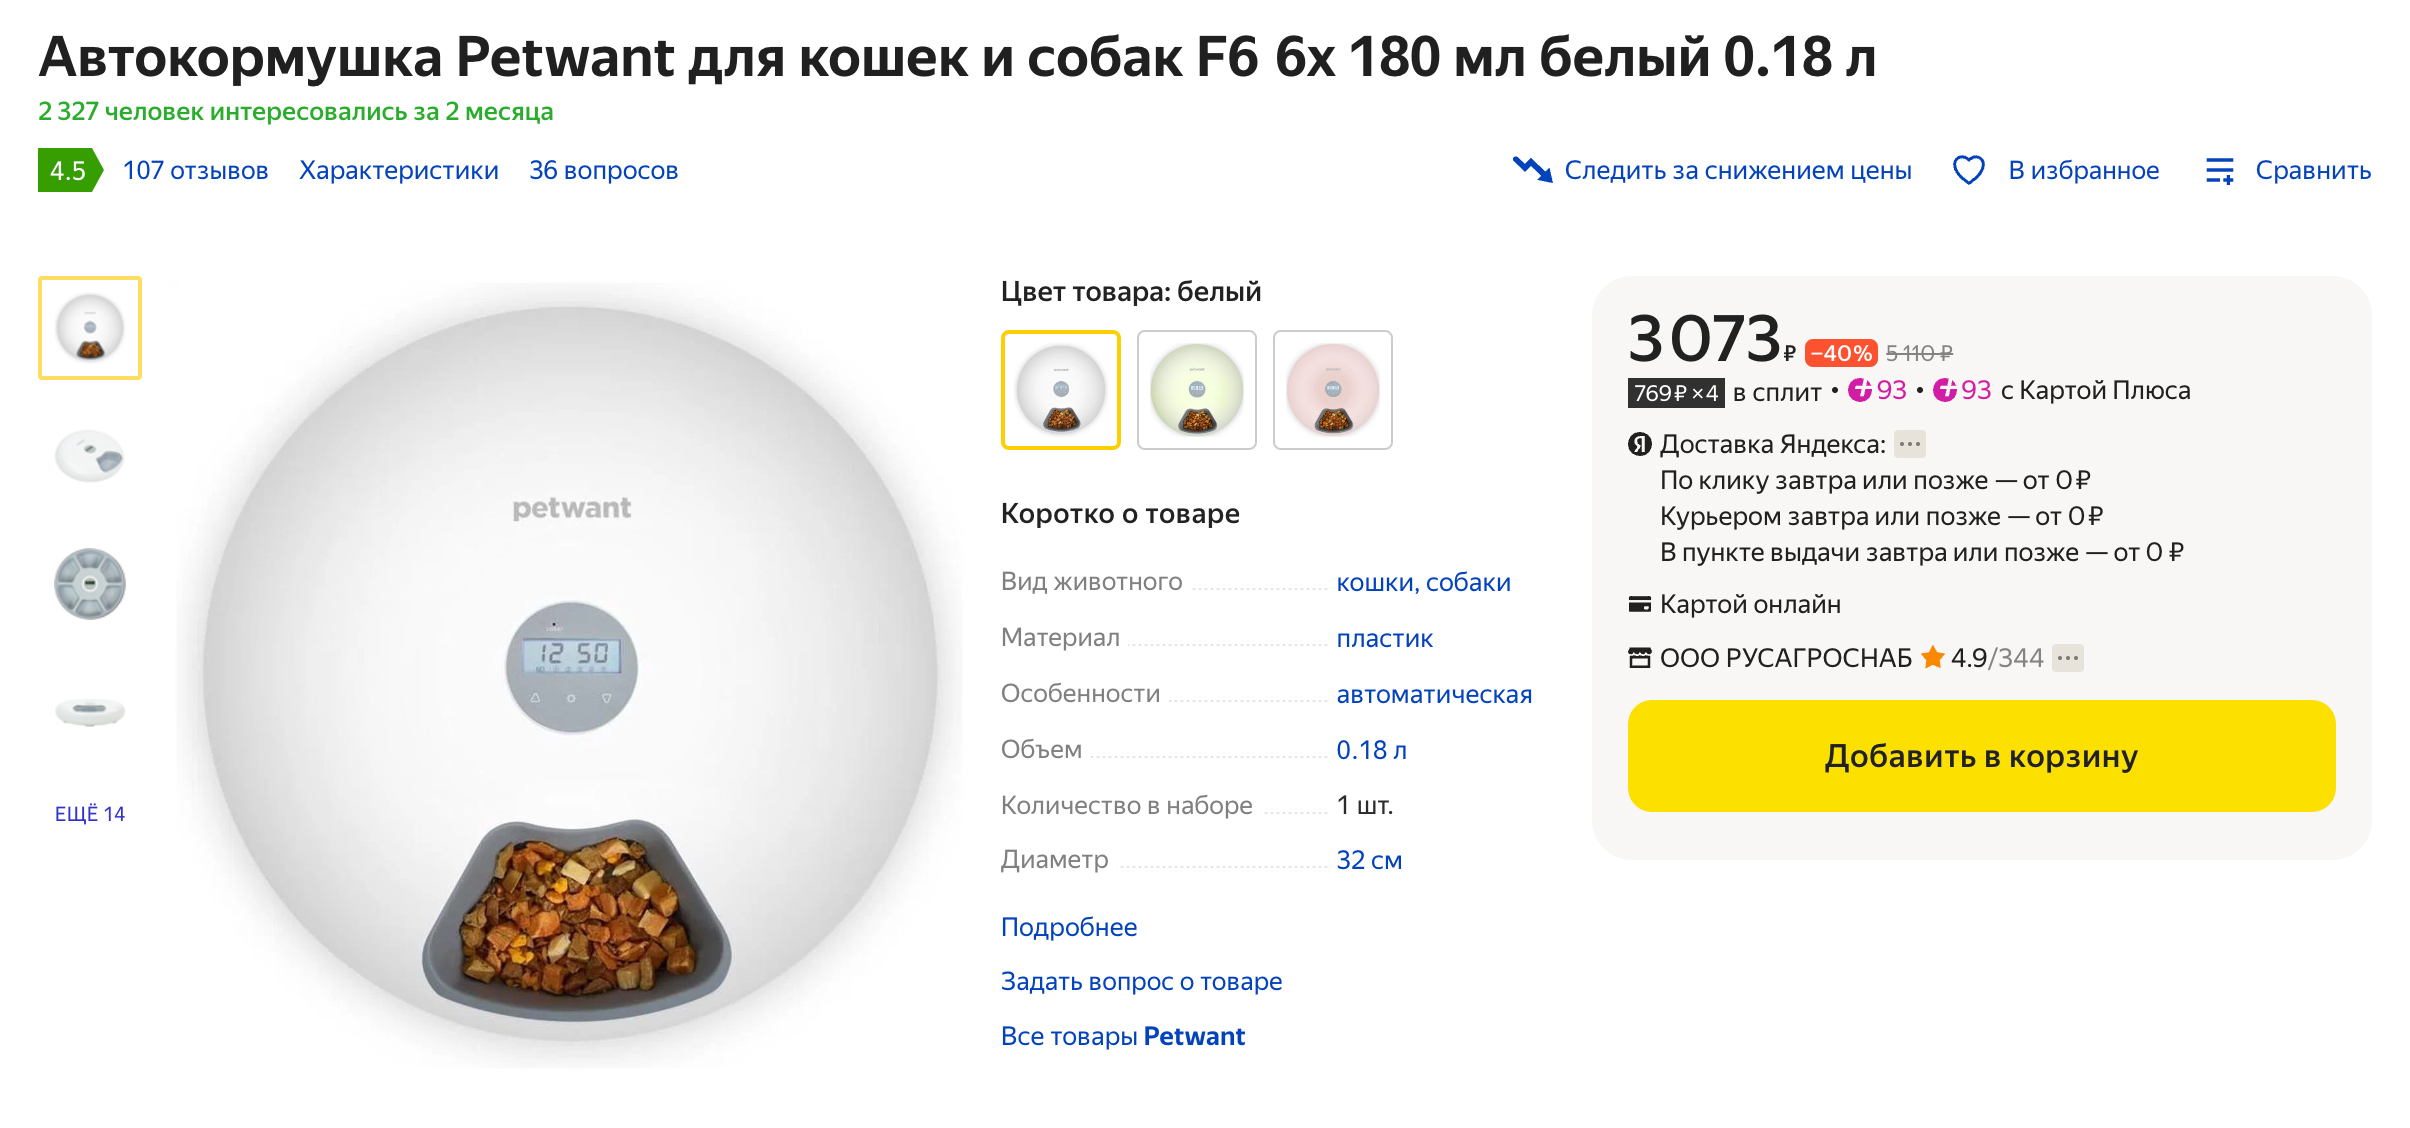 У нас такая автокормушка. Мы покупали ее на «Вайлдберриз», но сейчас ее там нет в наличии. Источник: market.yandex.ru